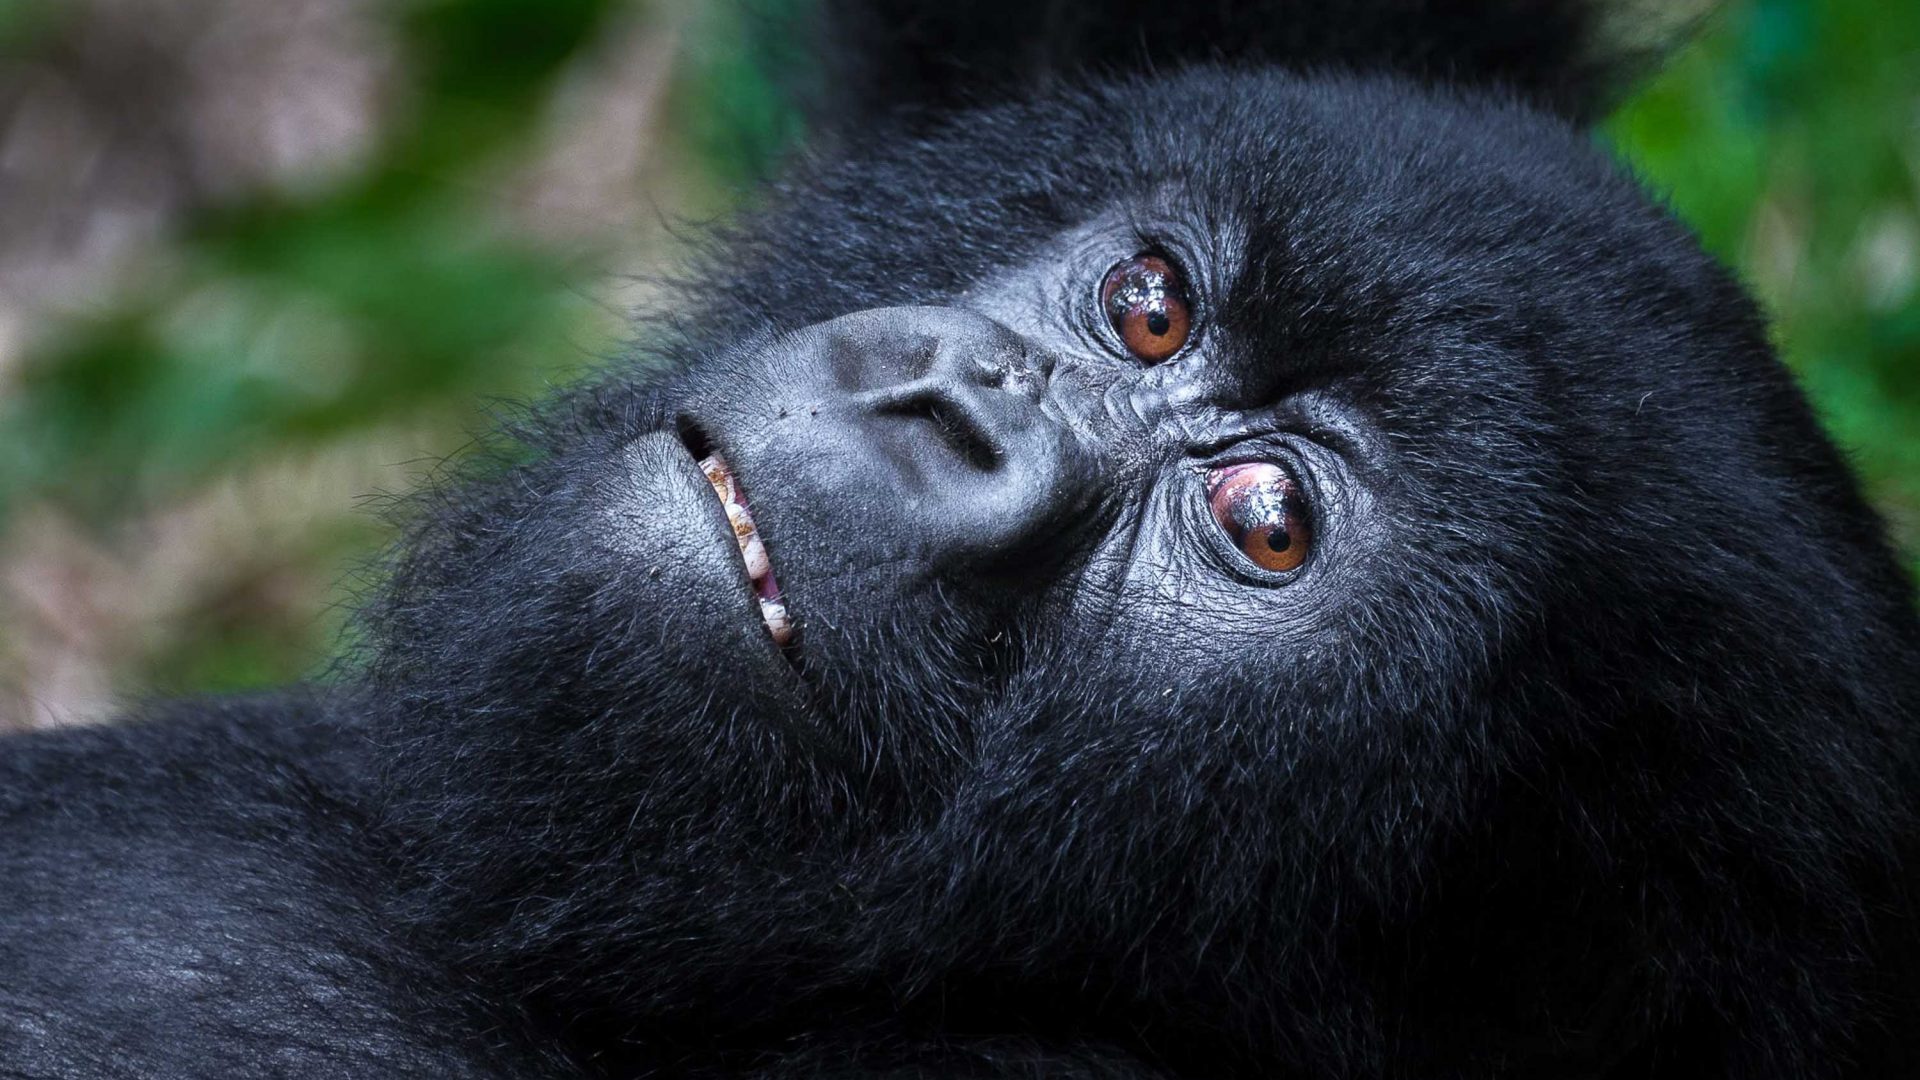 A mountain gorilla in Rwanda.